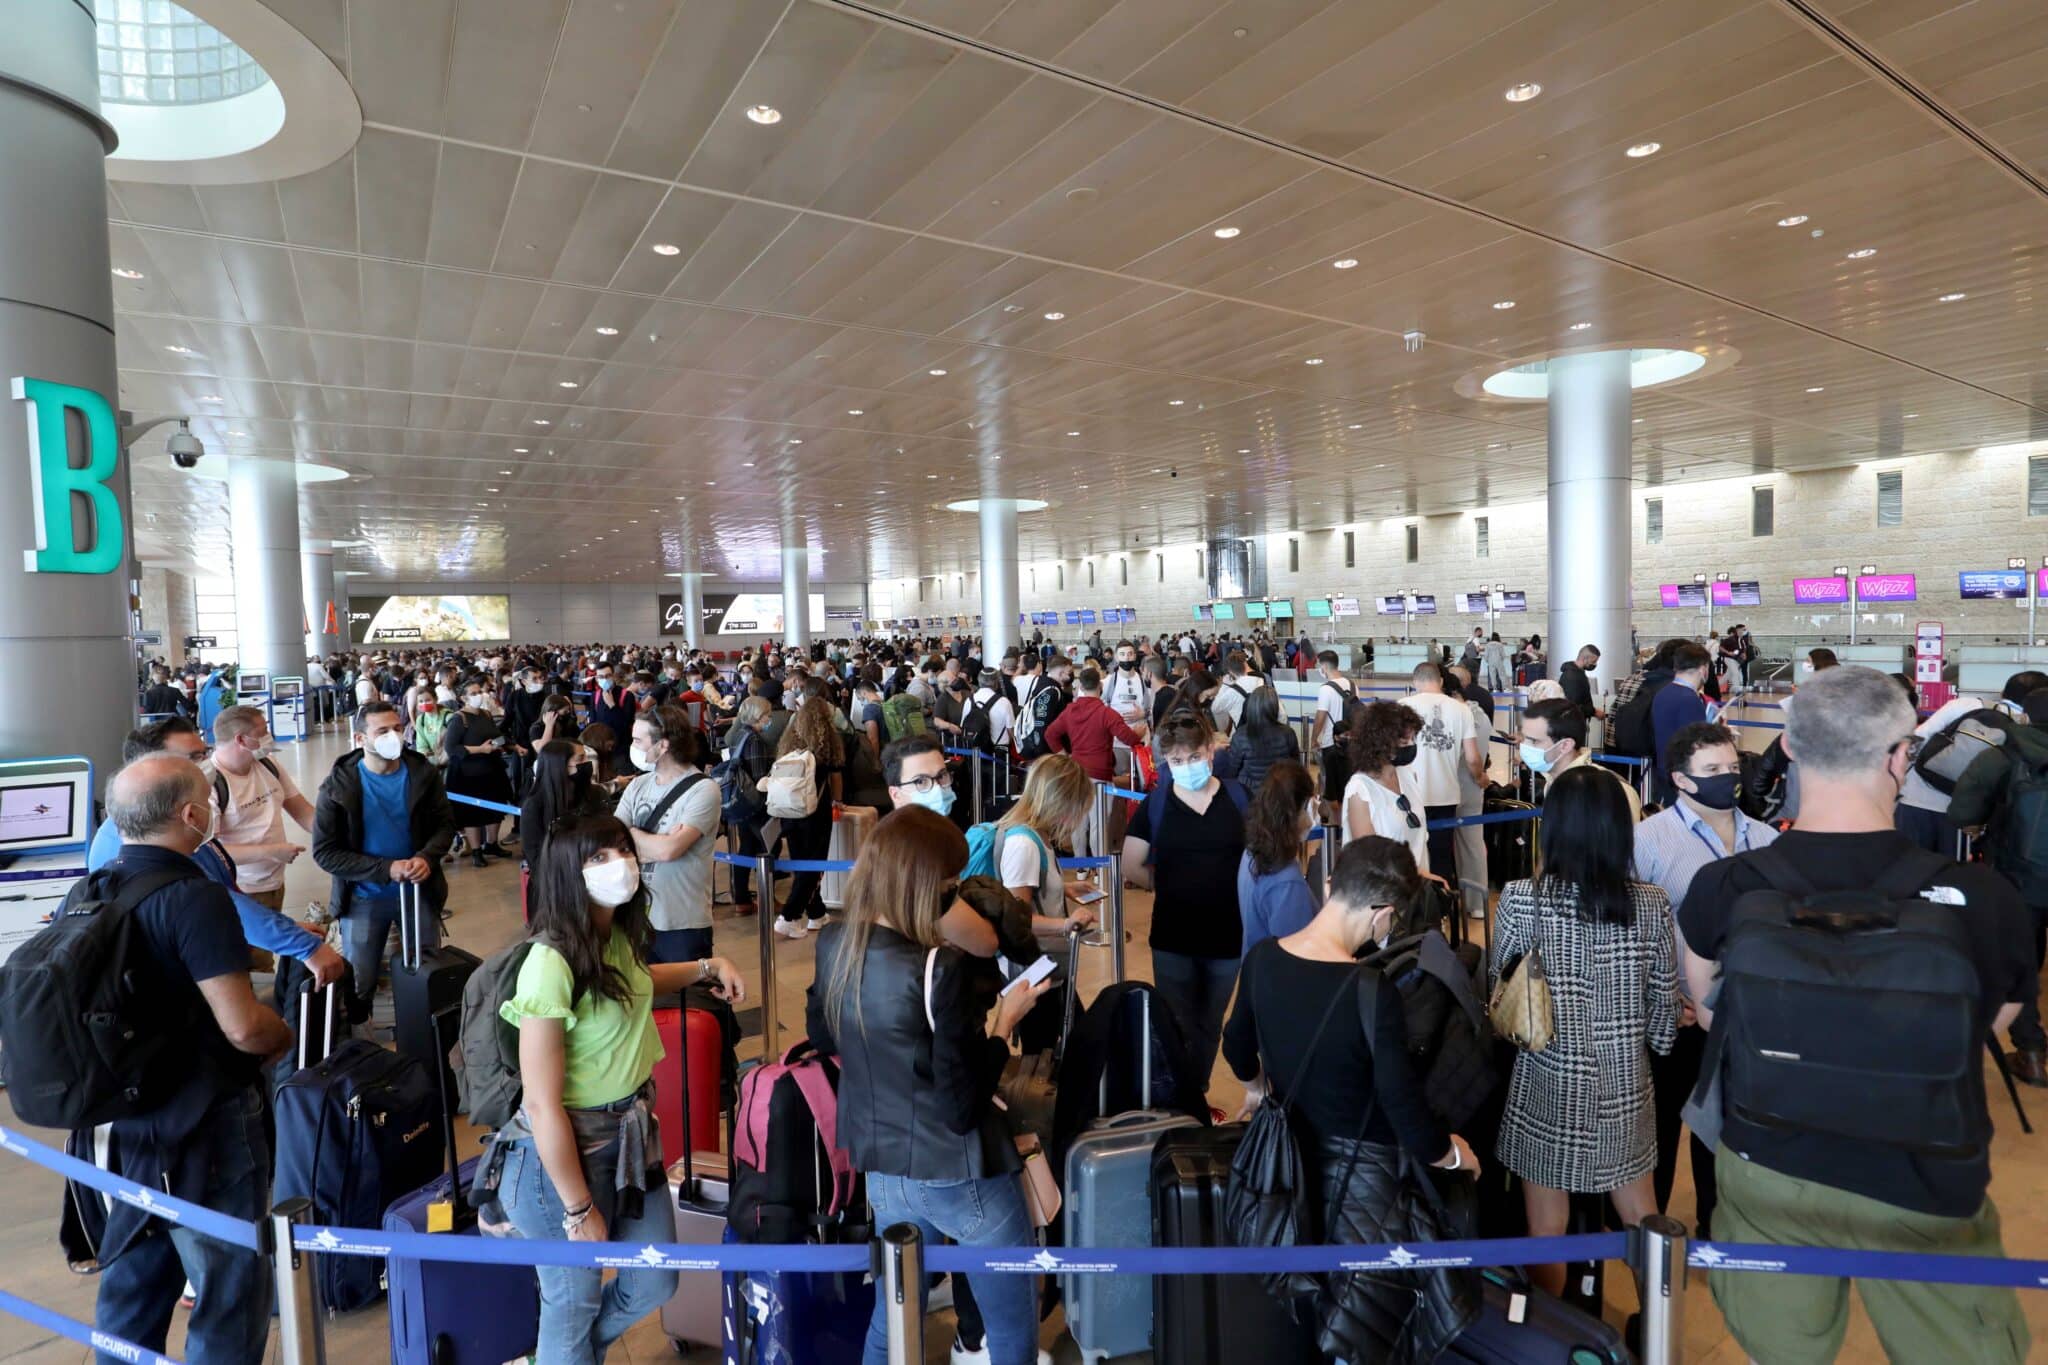 הישראלים חוזרים לטוס: ביולי-אוגוסט יעברו בנתב”ג כ-3.7 מיליון נוסעים